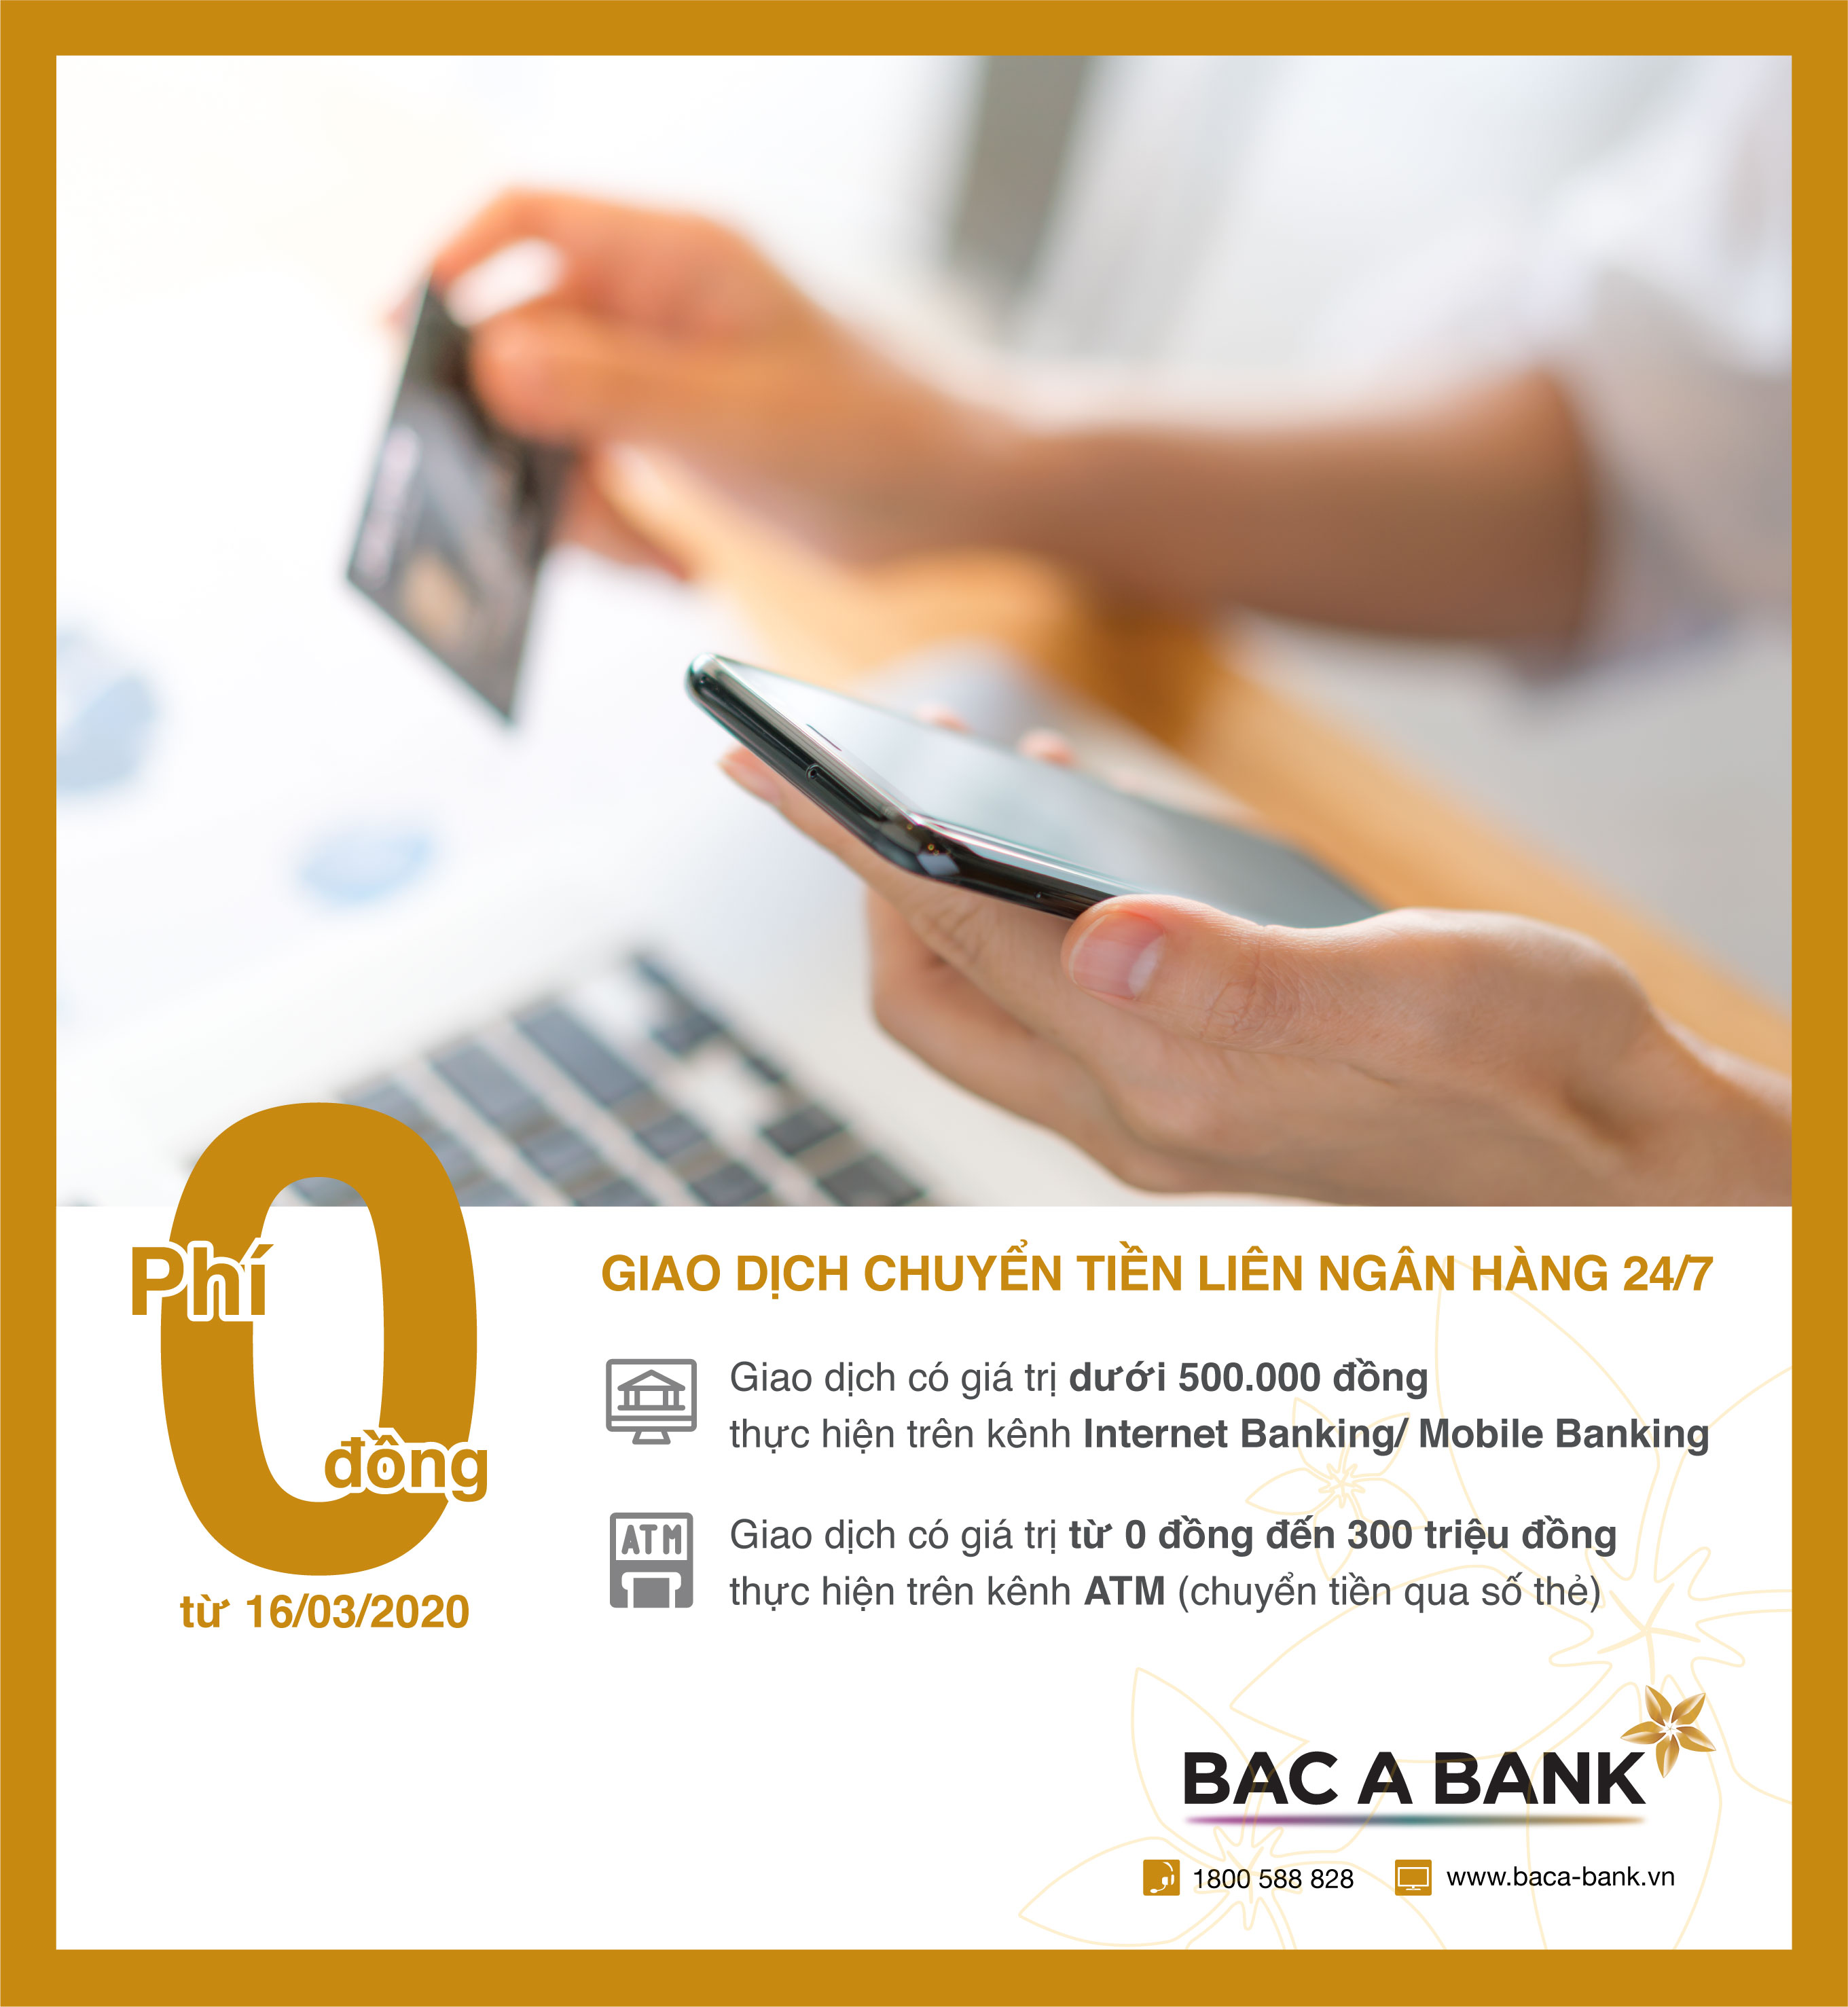 Không gian lựa chọn về các dịch vụ ngân hàng rất quan trọng! Hãy lựa chọn Ngân hàng Bắc Á - BAC A BANK để sử dụng dịch vụ ngân hàng uy tín và chất lượng đặc biệt về chuyển khoản.